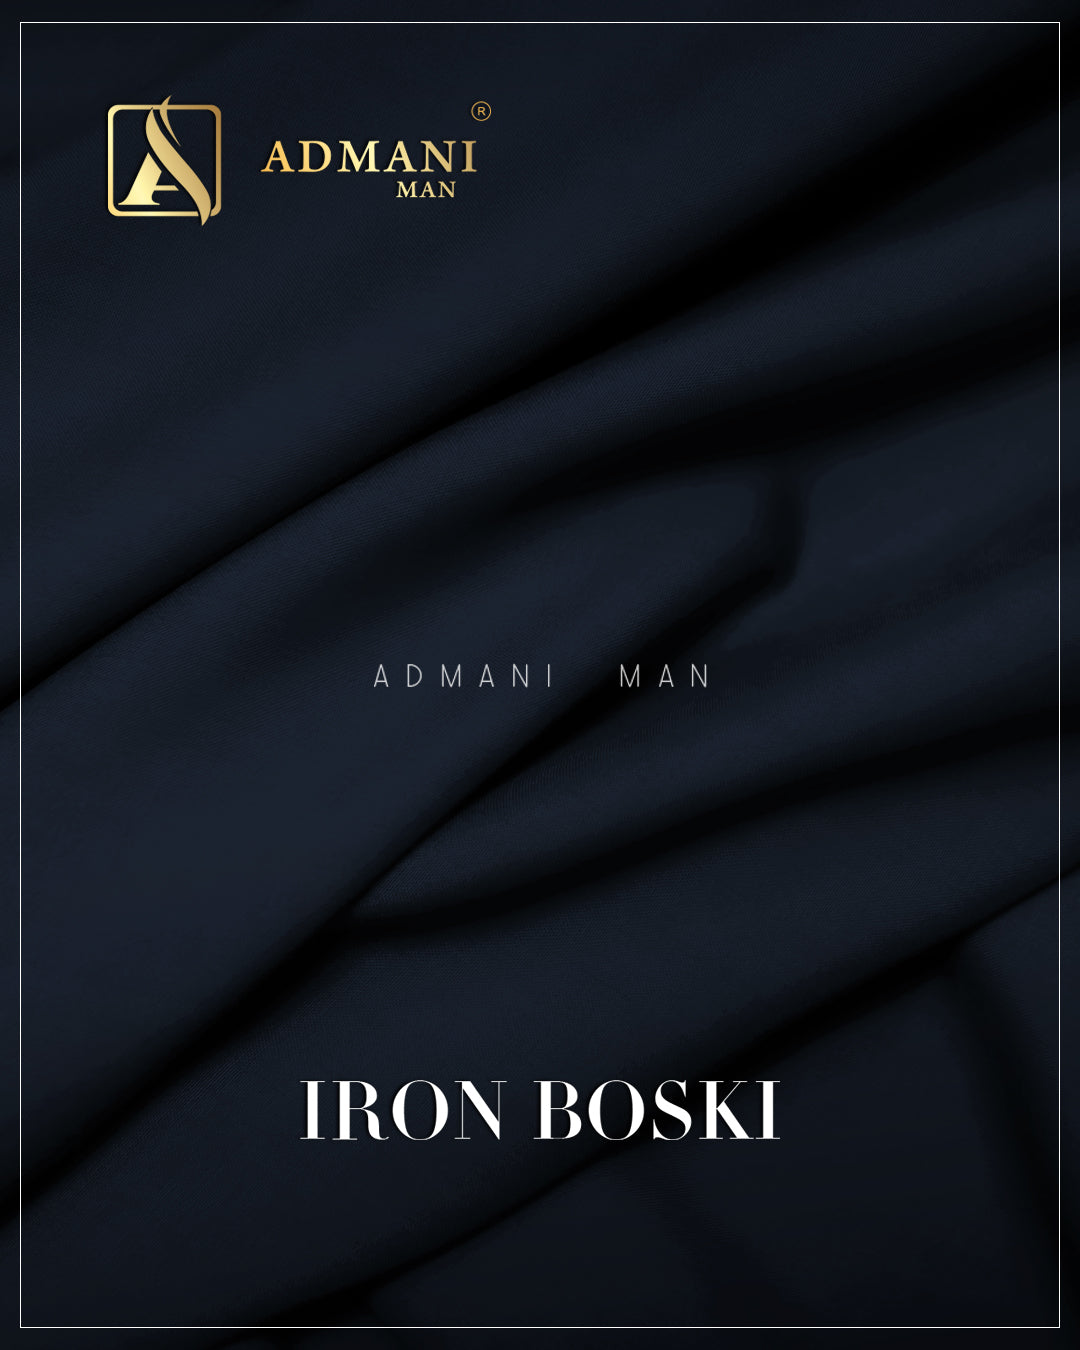 Iron Boski